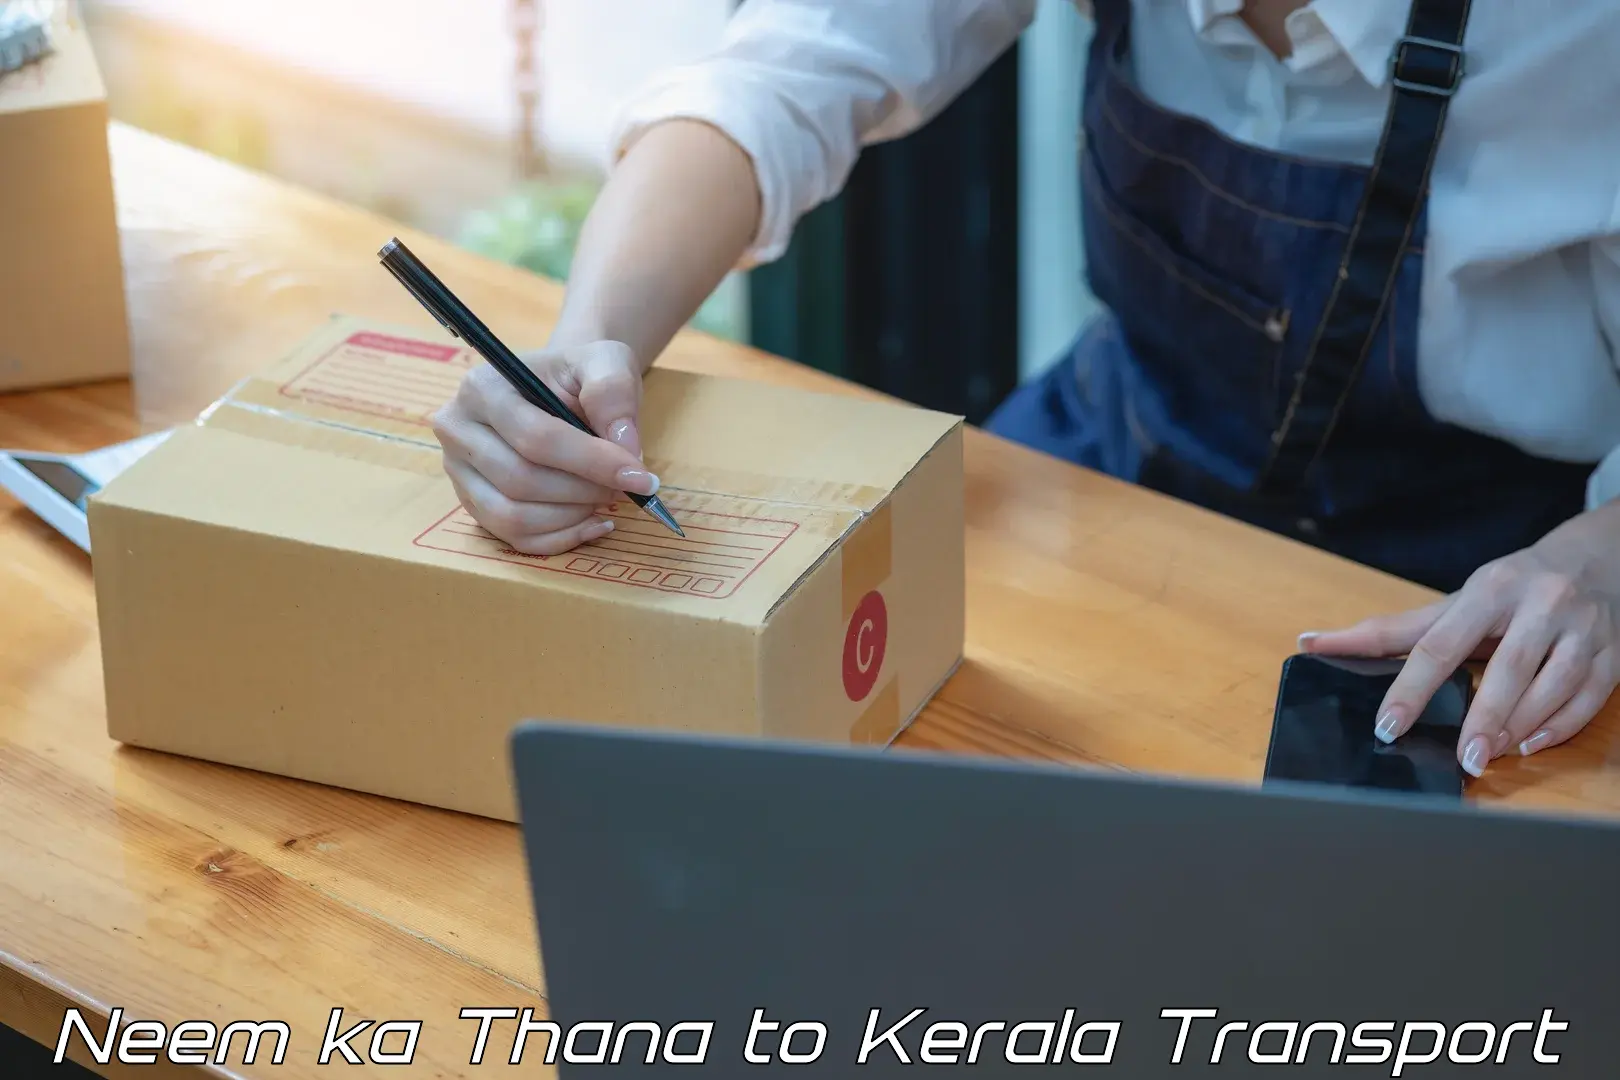 Container transportation services Neem ka Thana to Kanjiramattom